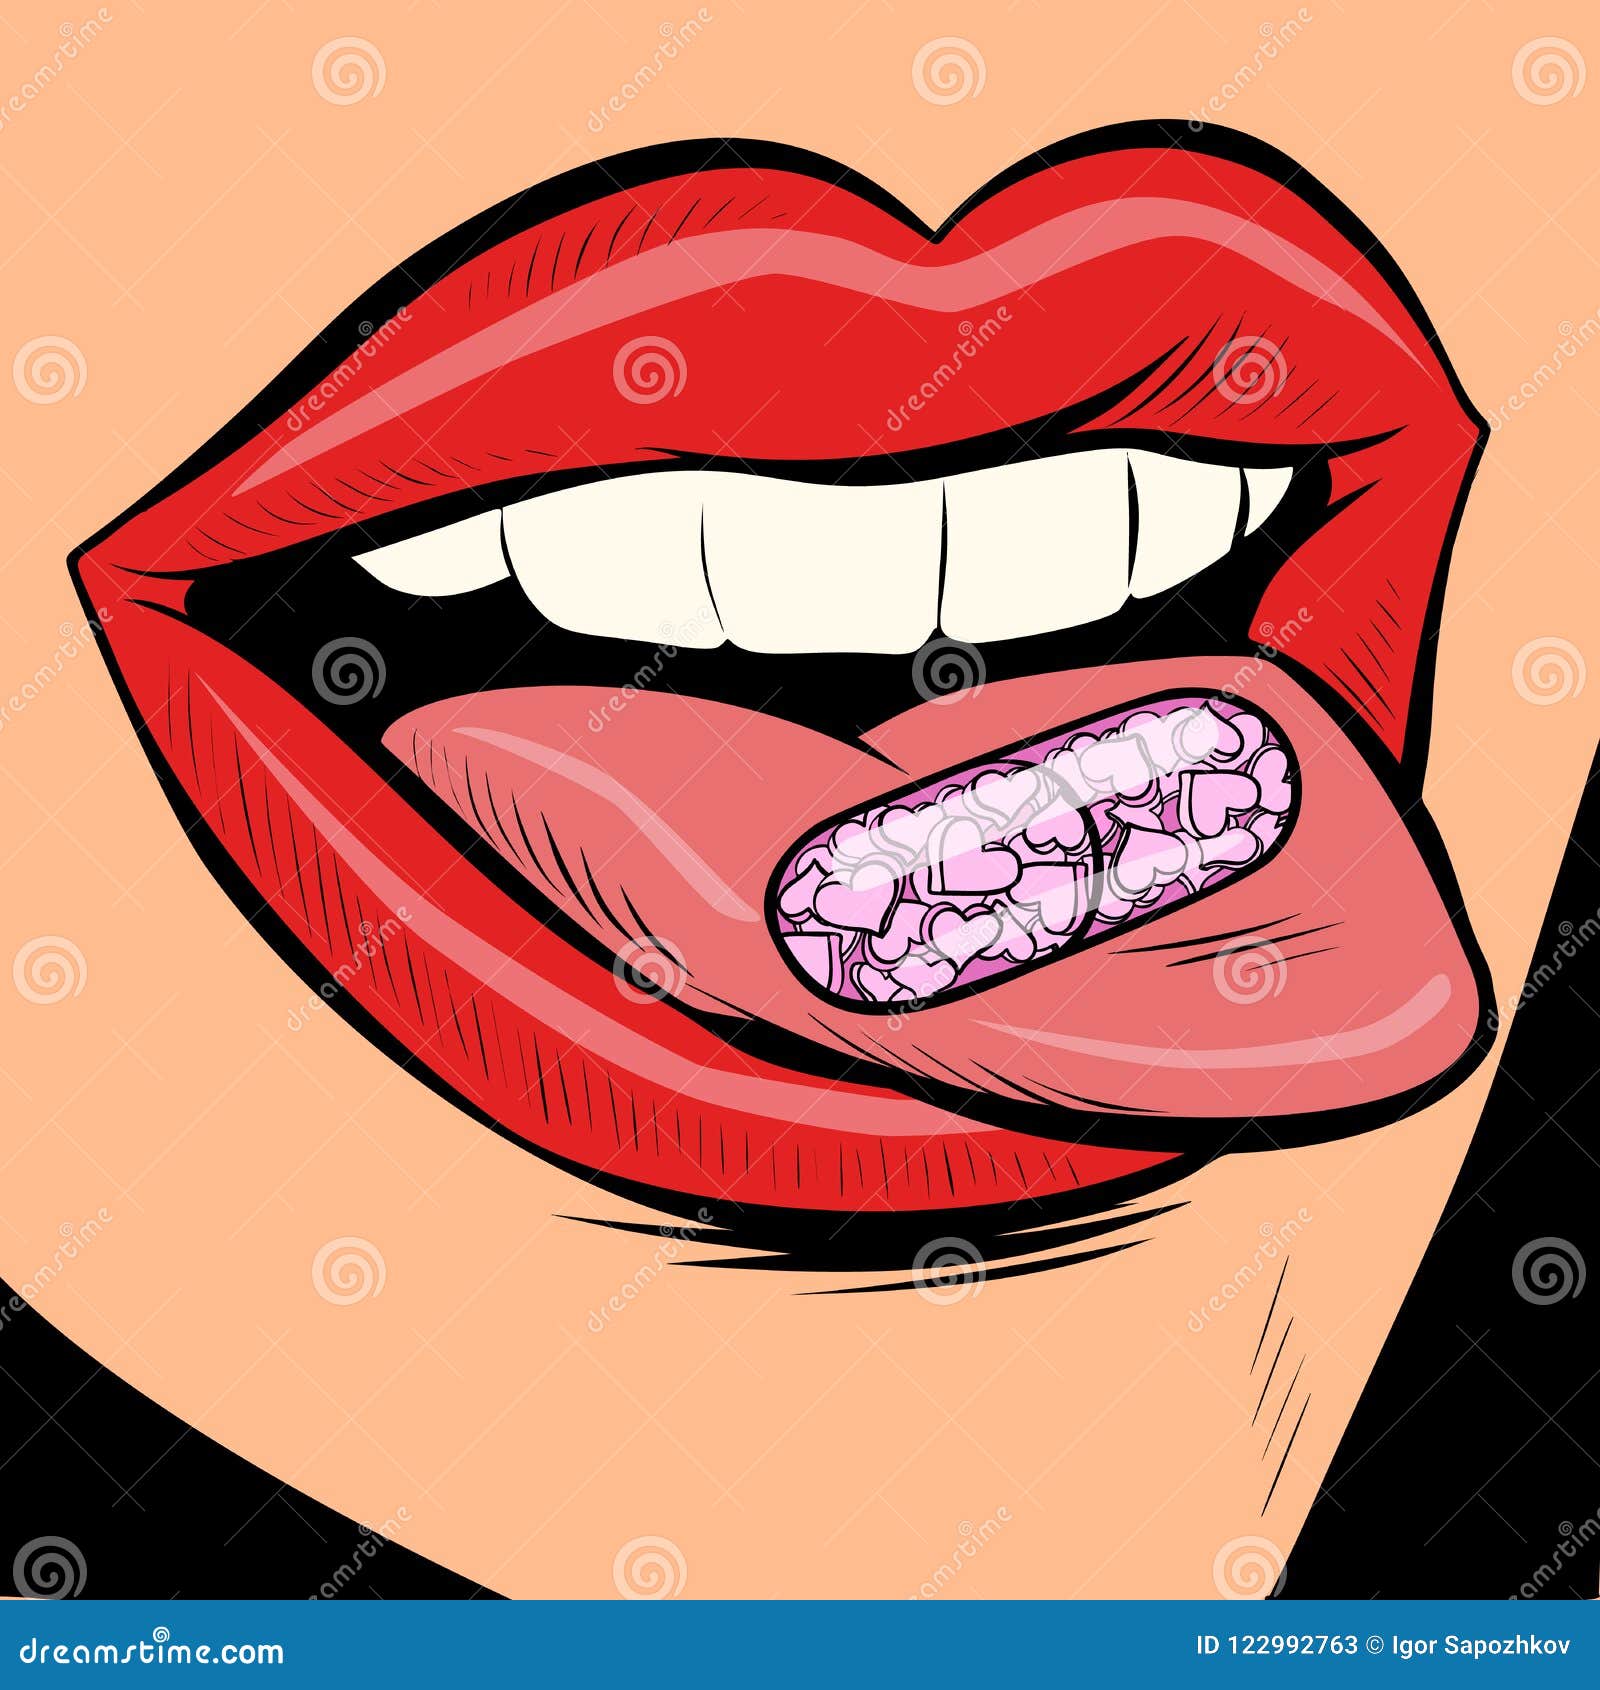 Pill Tongue Stock Illustrations – 285 Pill Tongue Stock Illustrations,  Vectors & Clipart - Dreamstime